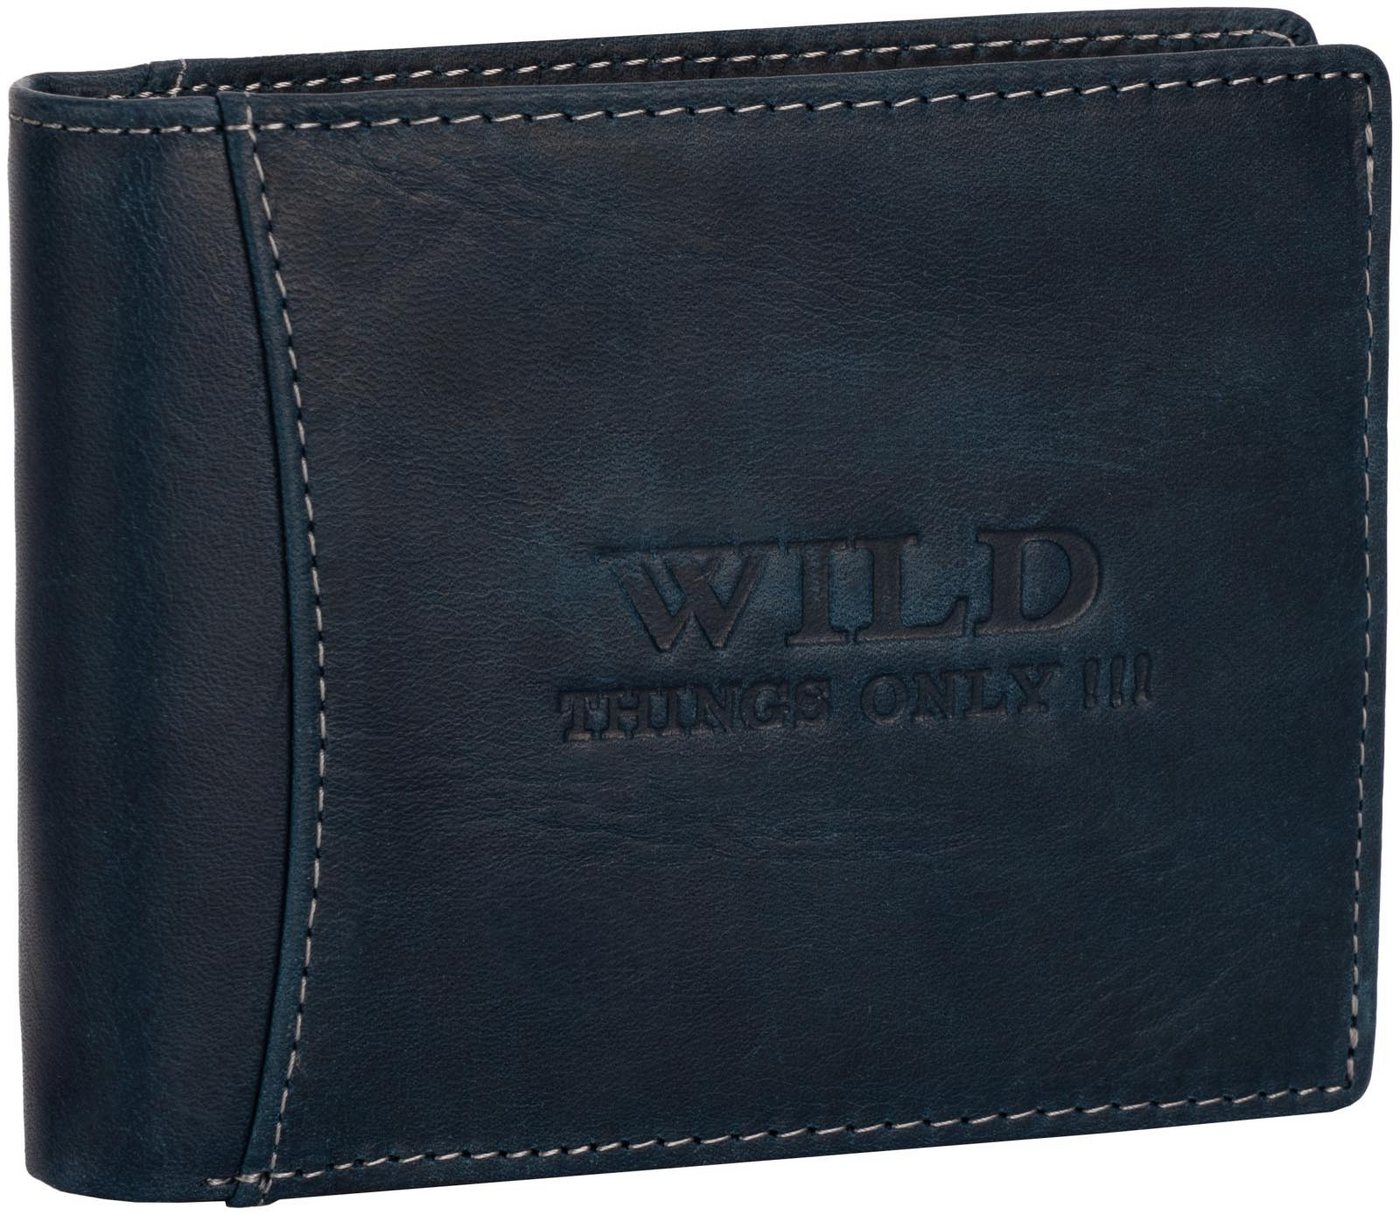 Wild Things Only !!! Geldbörse RFID echt Leder Portemonnaie Geldbörse Geldbeutel Herren Querformat, RFID Schutz von Wild Things Only !!!